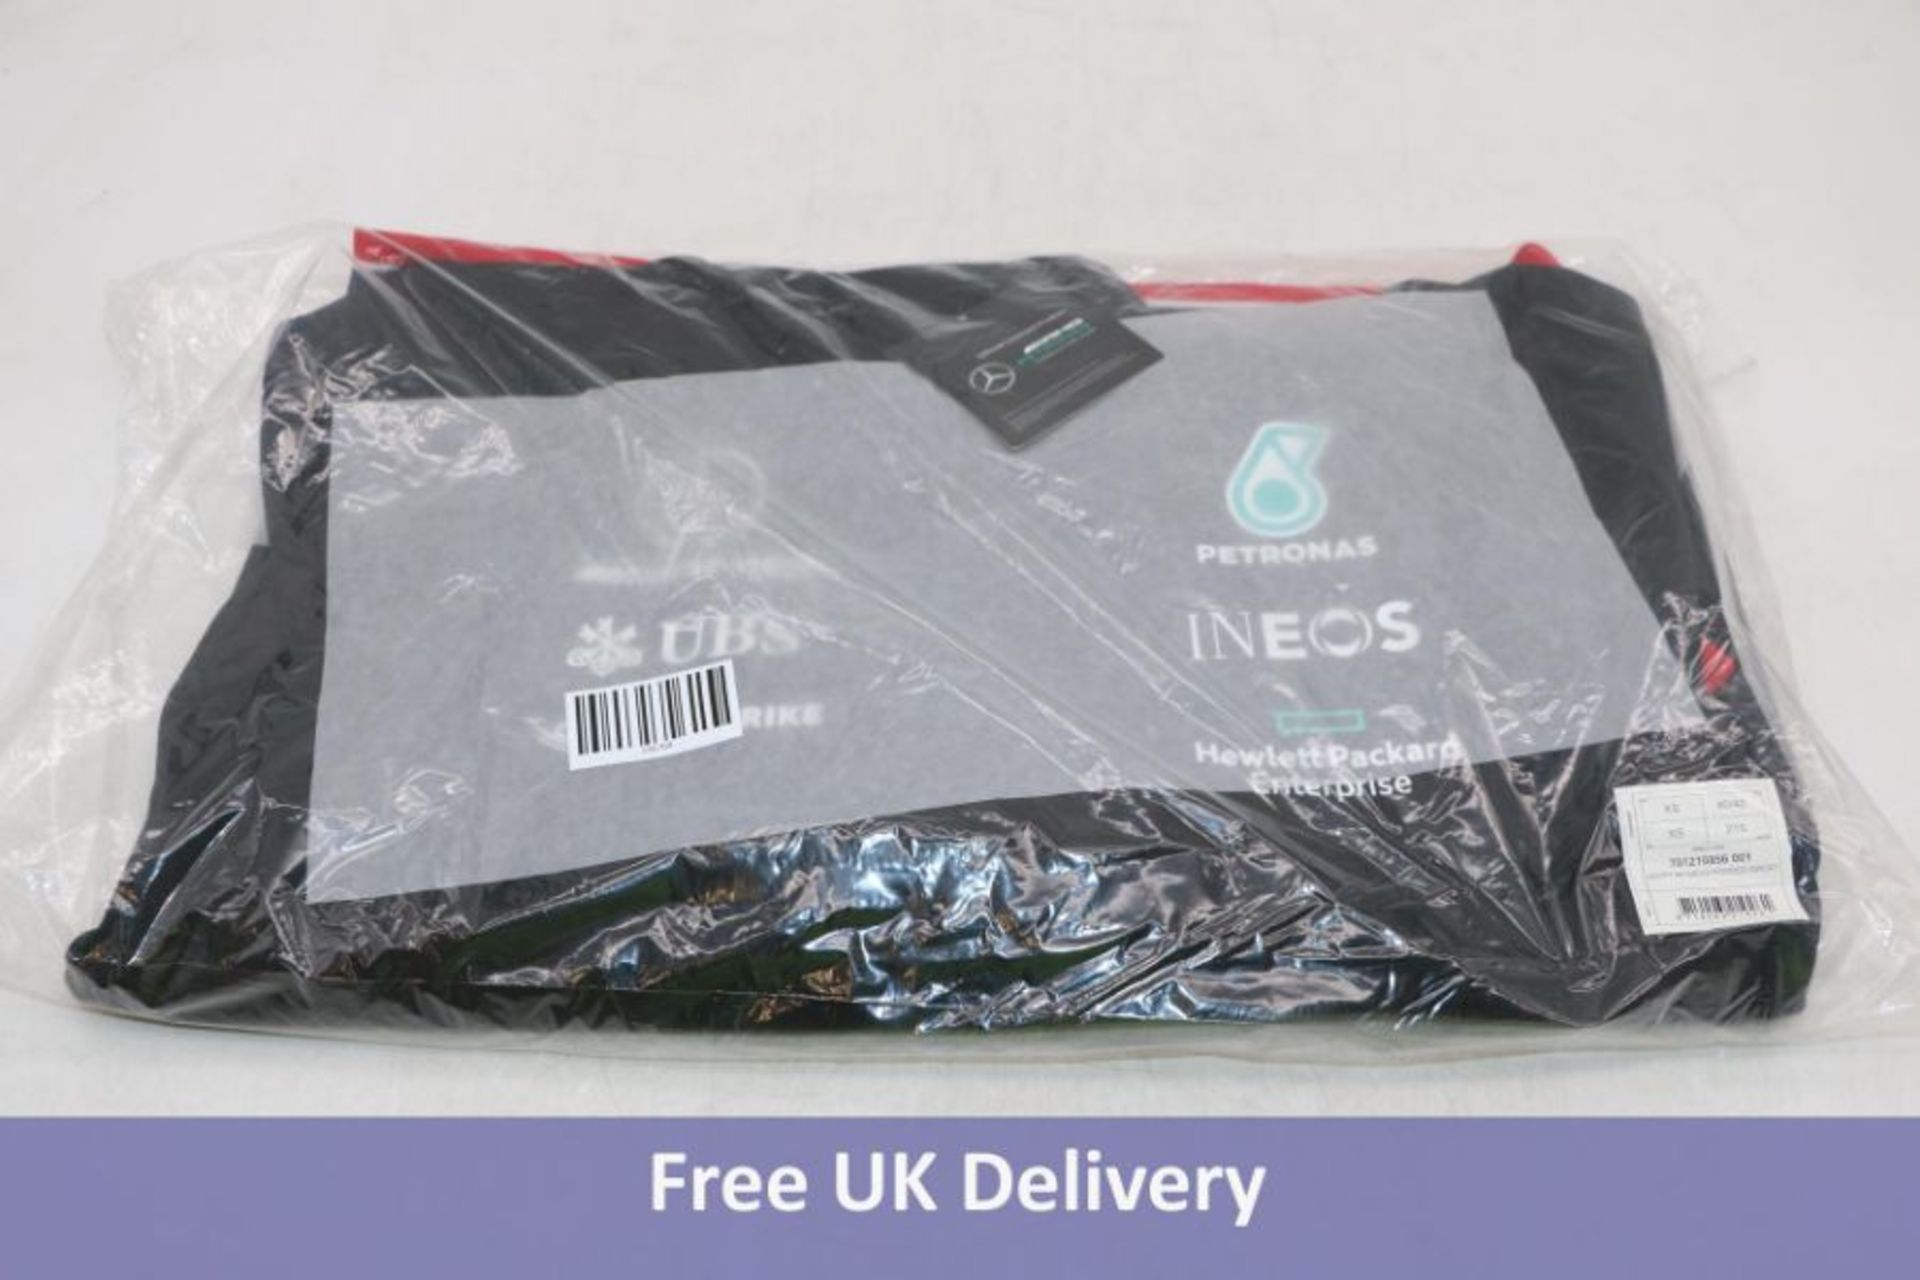 Three Mercedes Men's AMD Petronas, Hoodie, Black/Red, UK M - Image 3 of 3